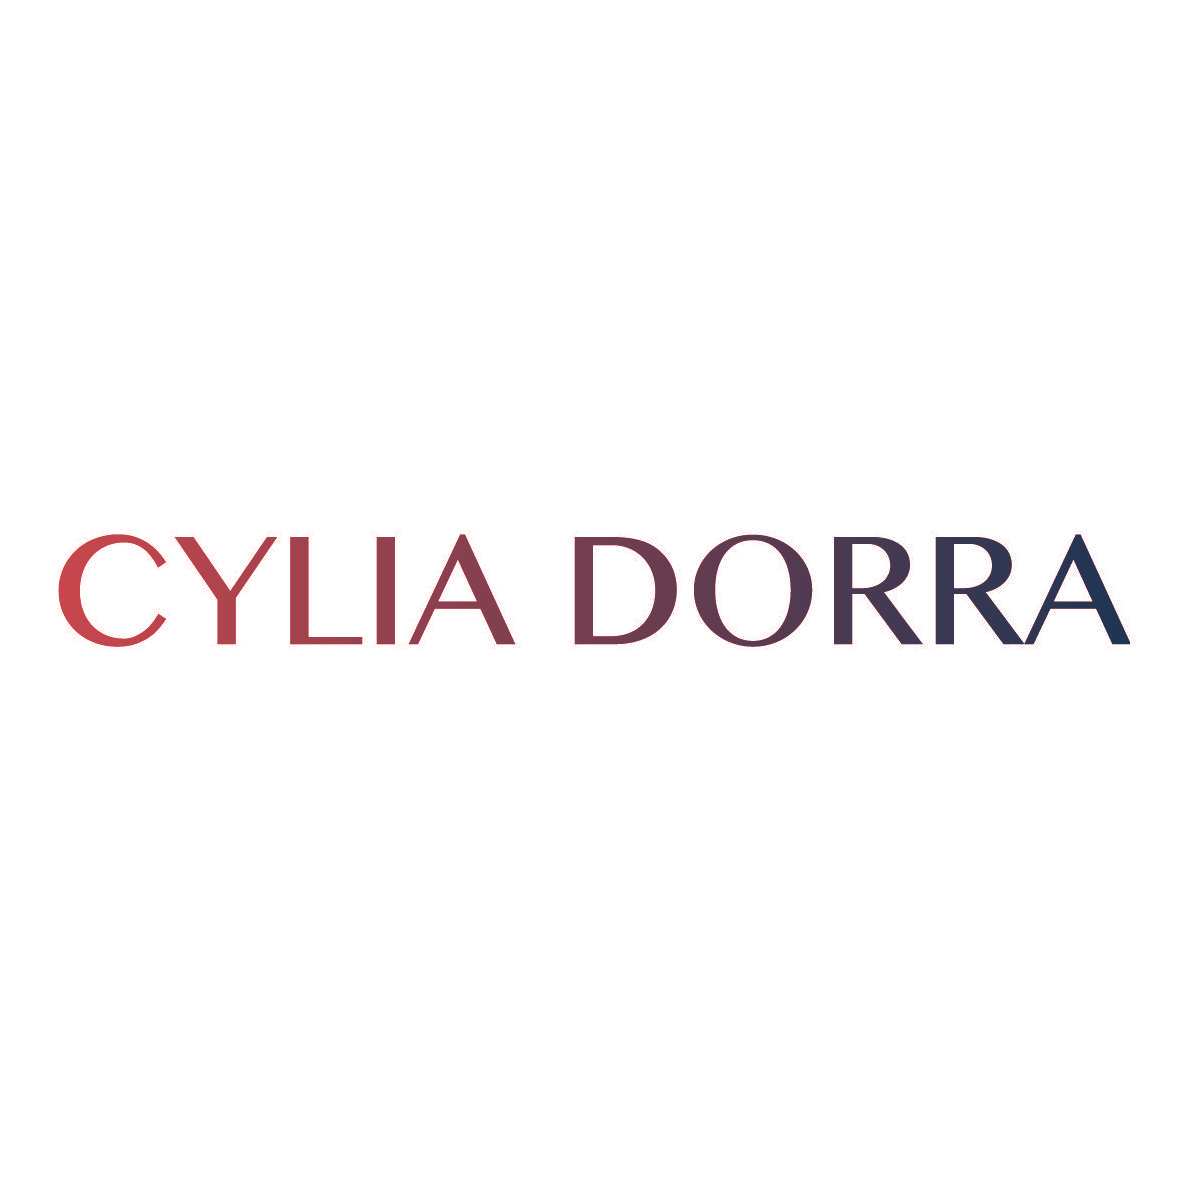 CYLIA DORRA